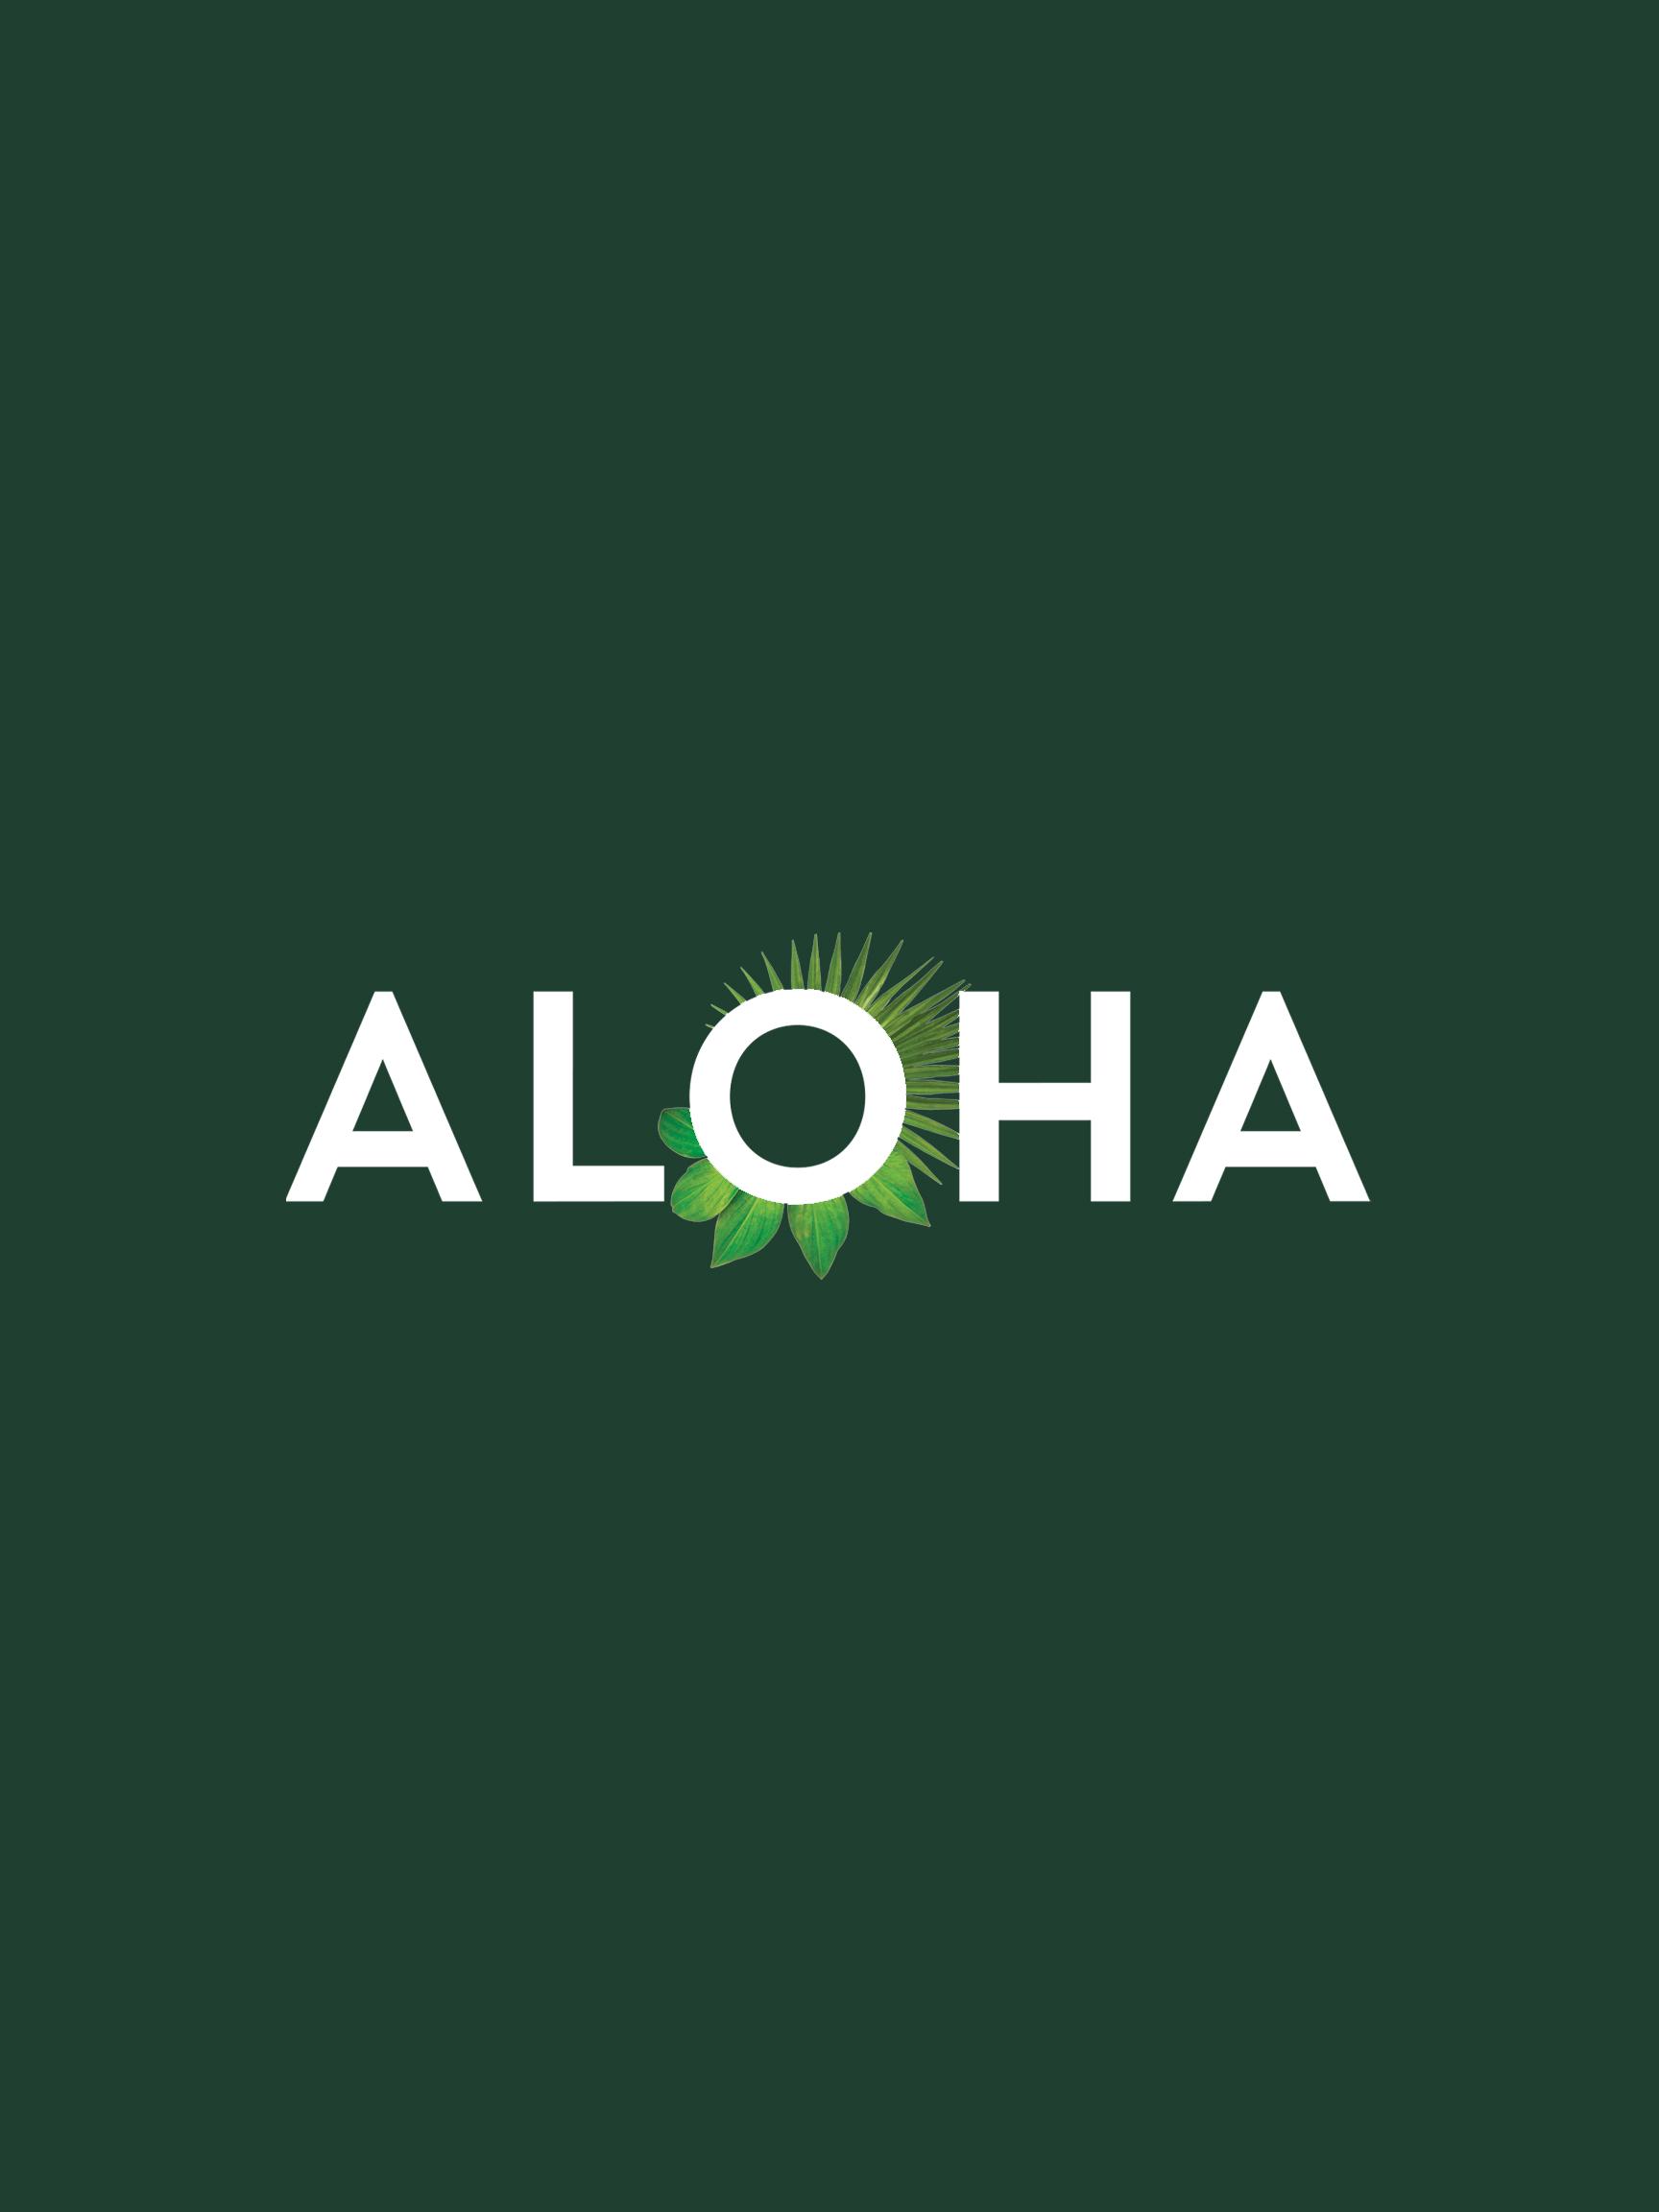 Aloha logo 2x